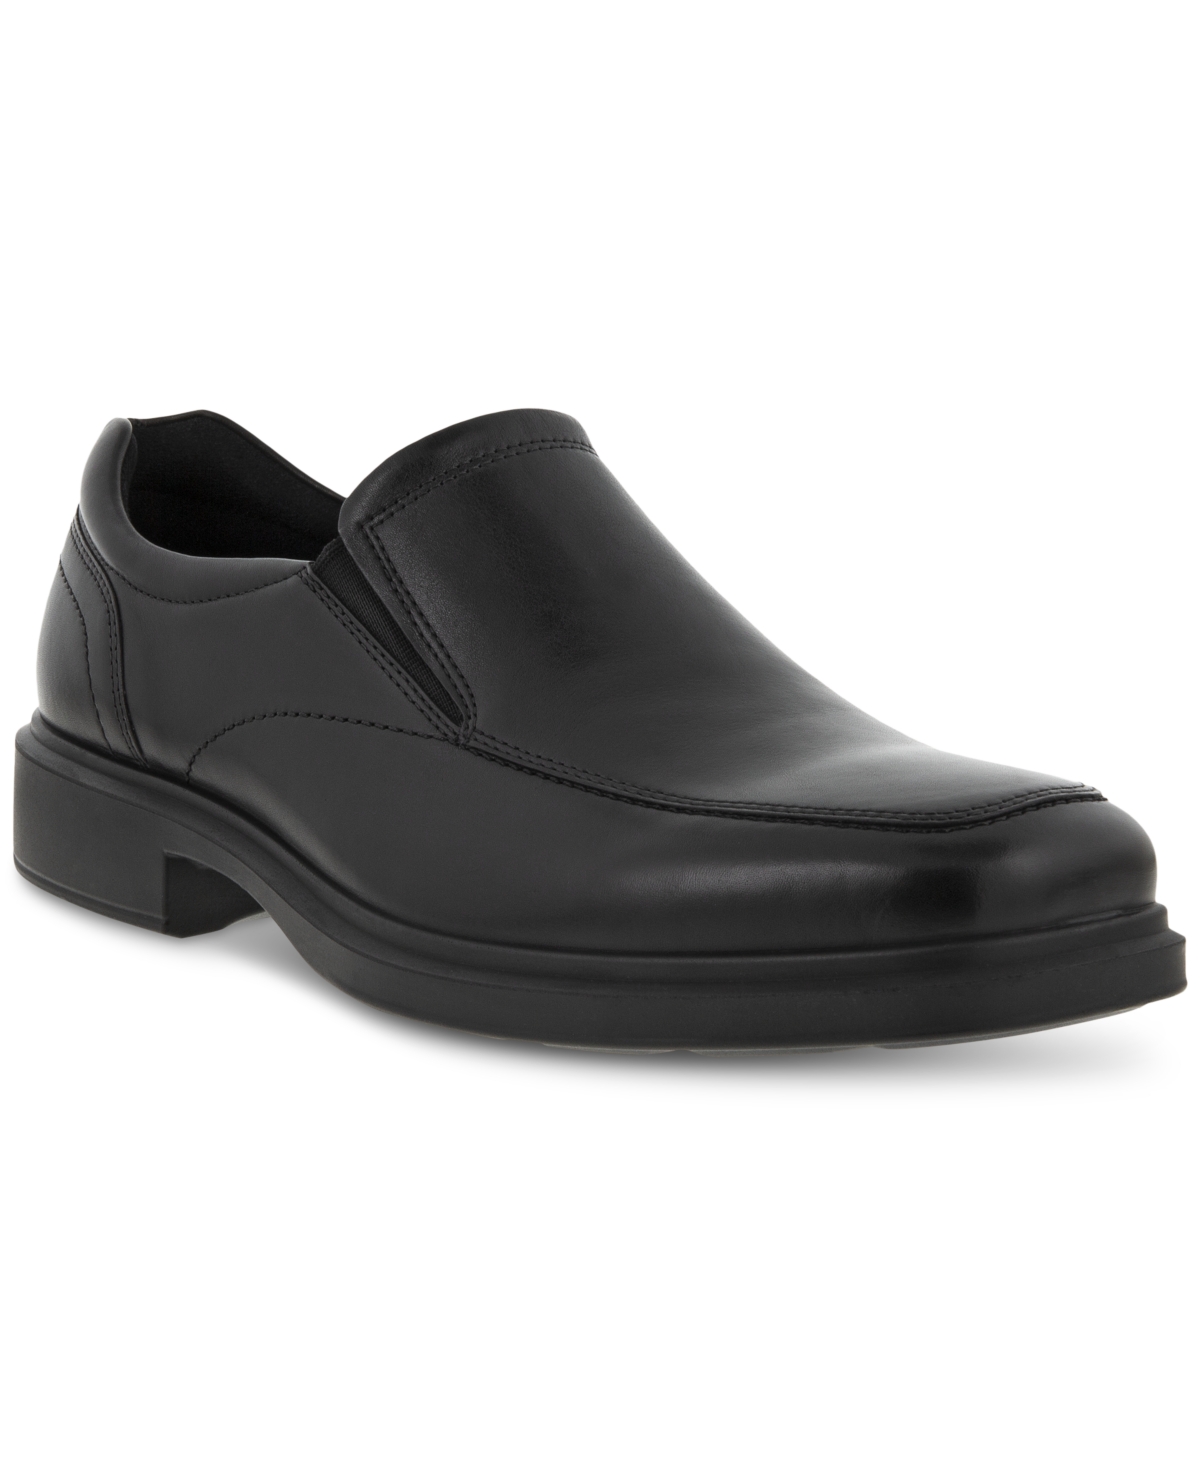 Ecco Men's Helsinki Slip-On Loafers Men's Shoes